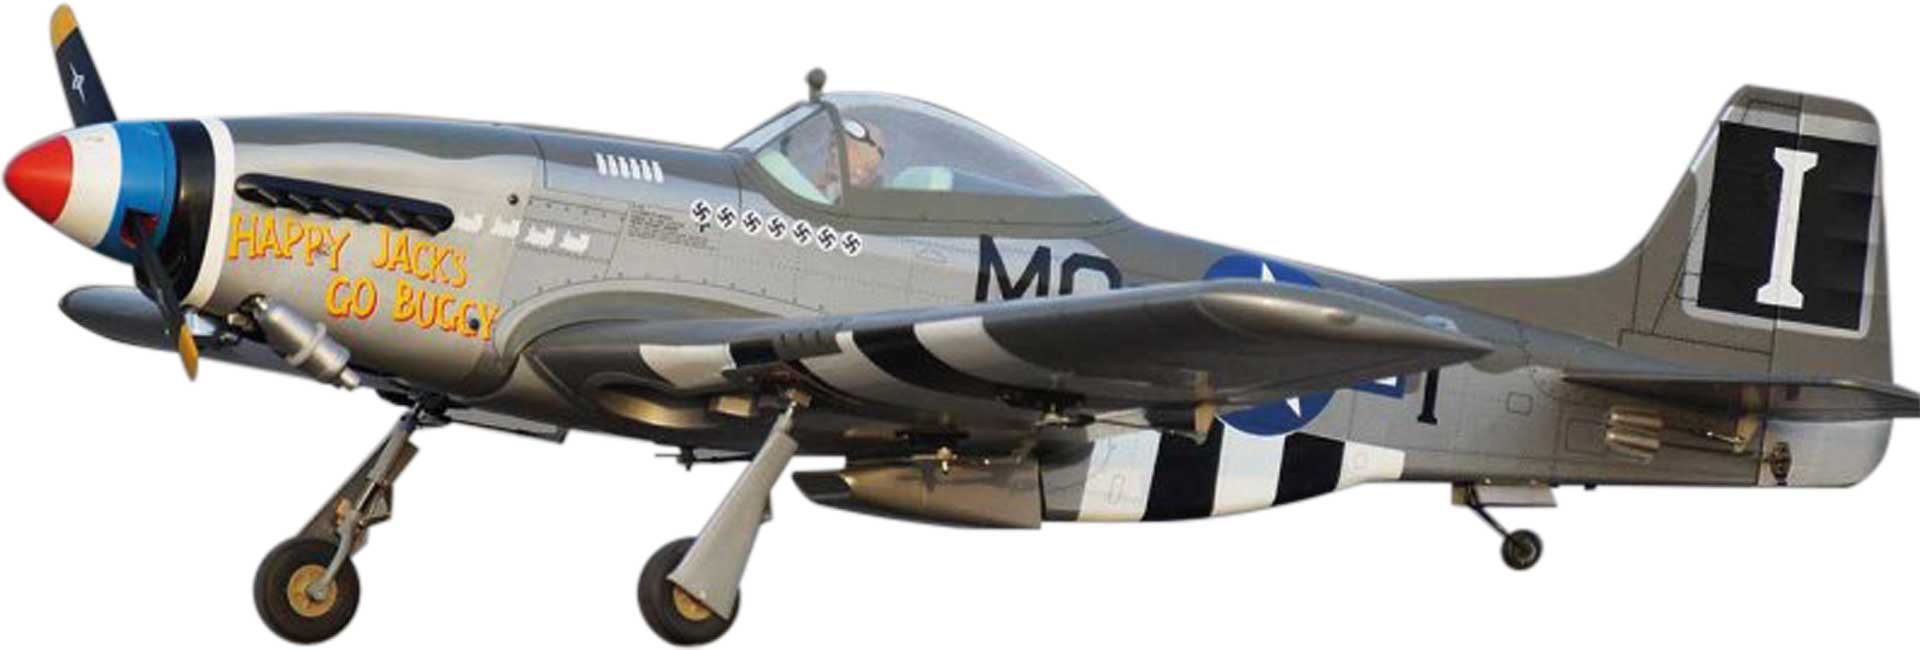 VQ Models P-51D Mustang (Happy Jack's) / 1580mm Oiseau de guerre ARF